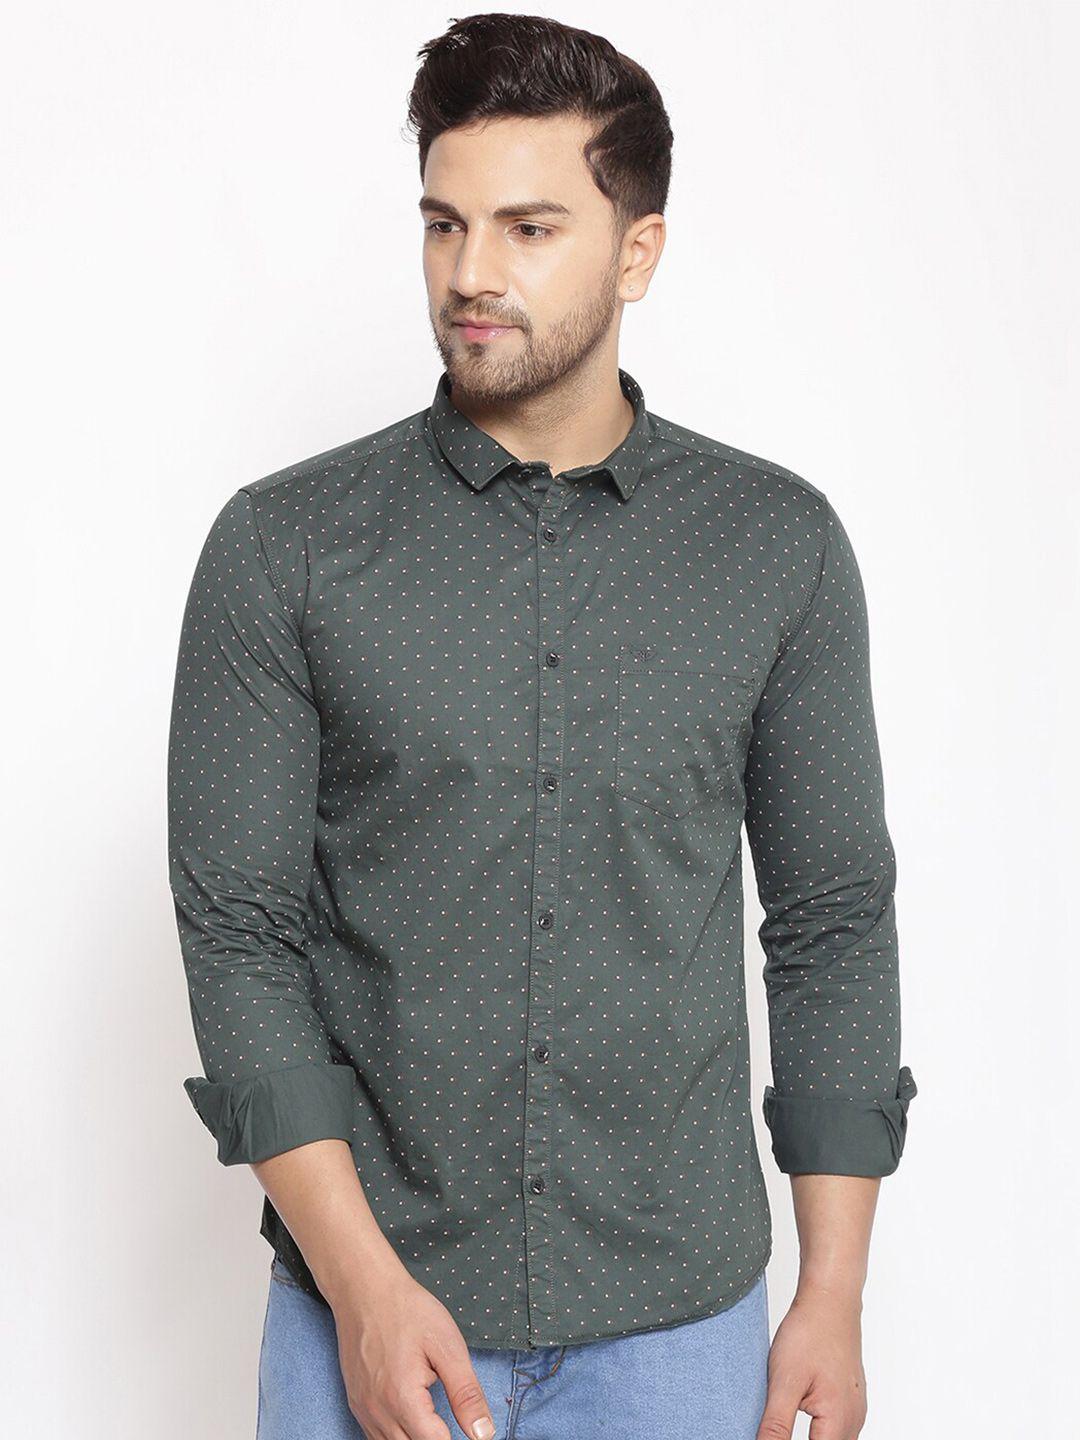 showoff comfort polka dots  printed casual shirt